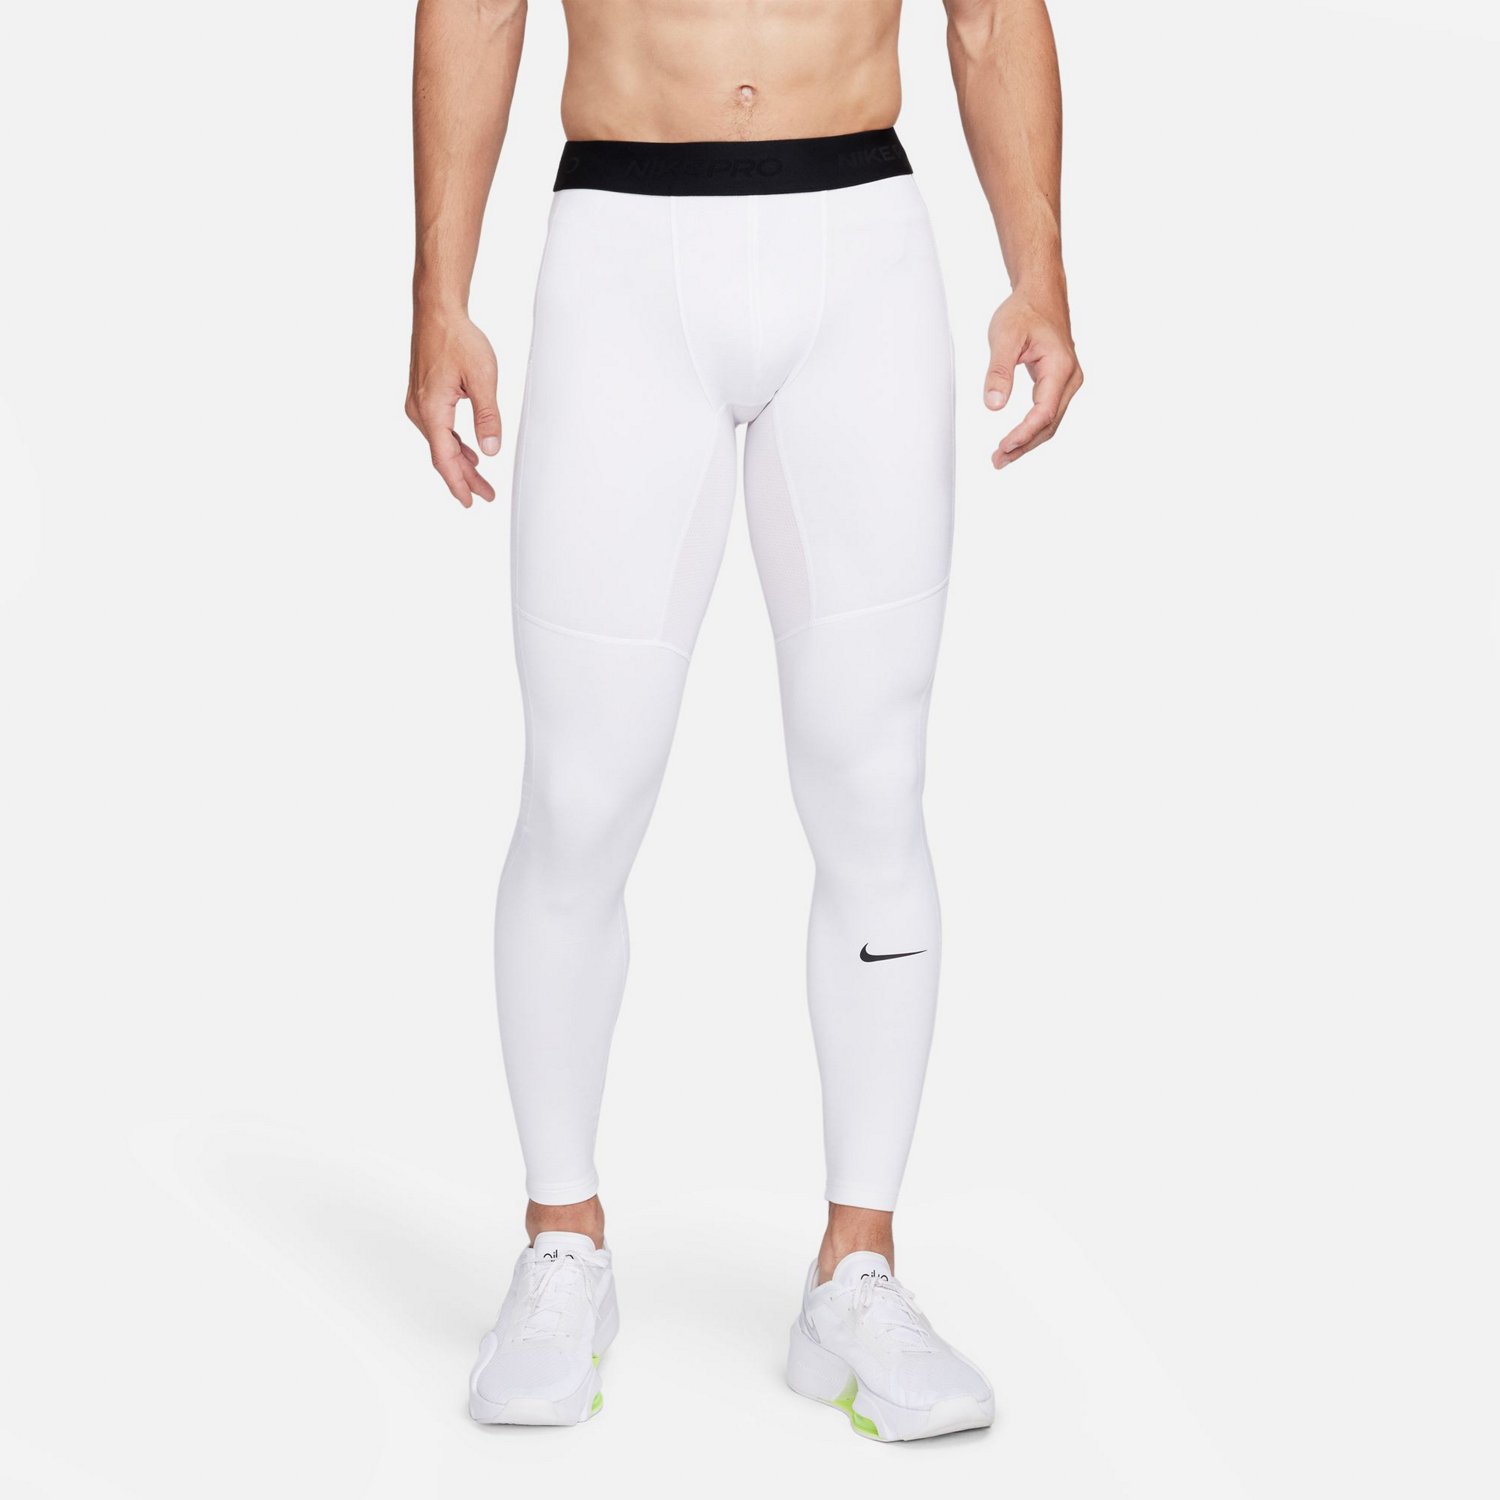 Nike Men's Pro Therma Training Tights White/Black, L